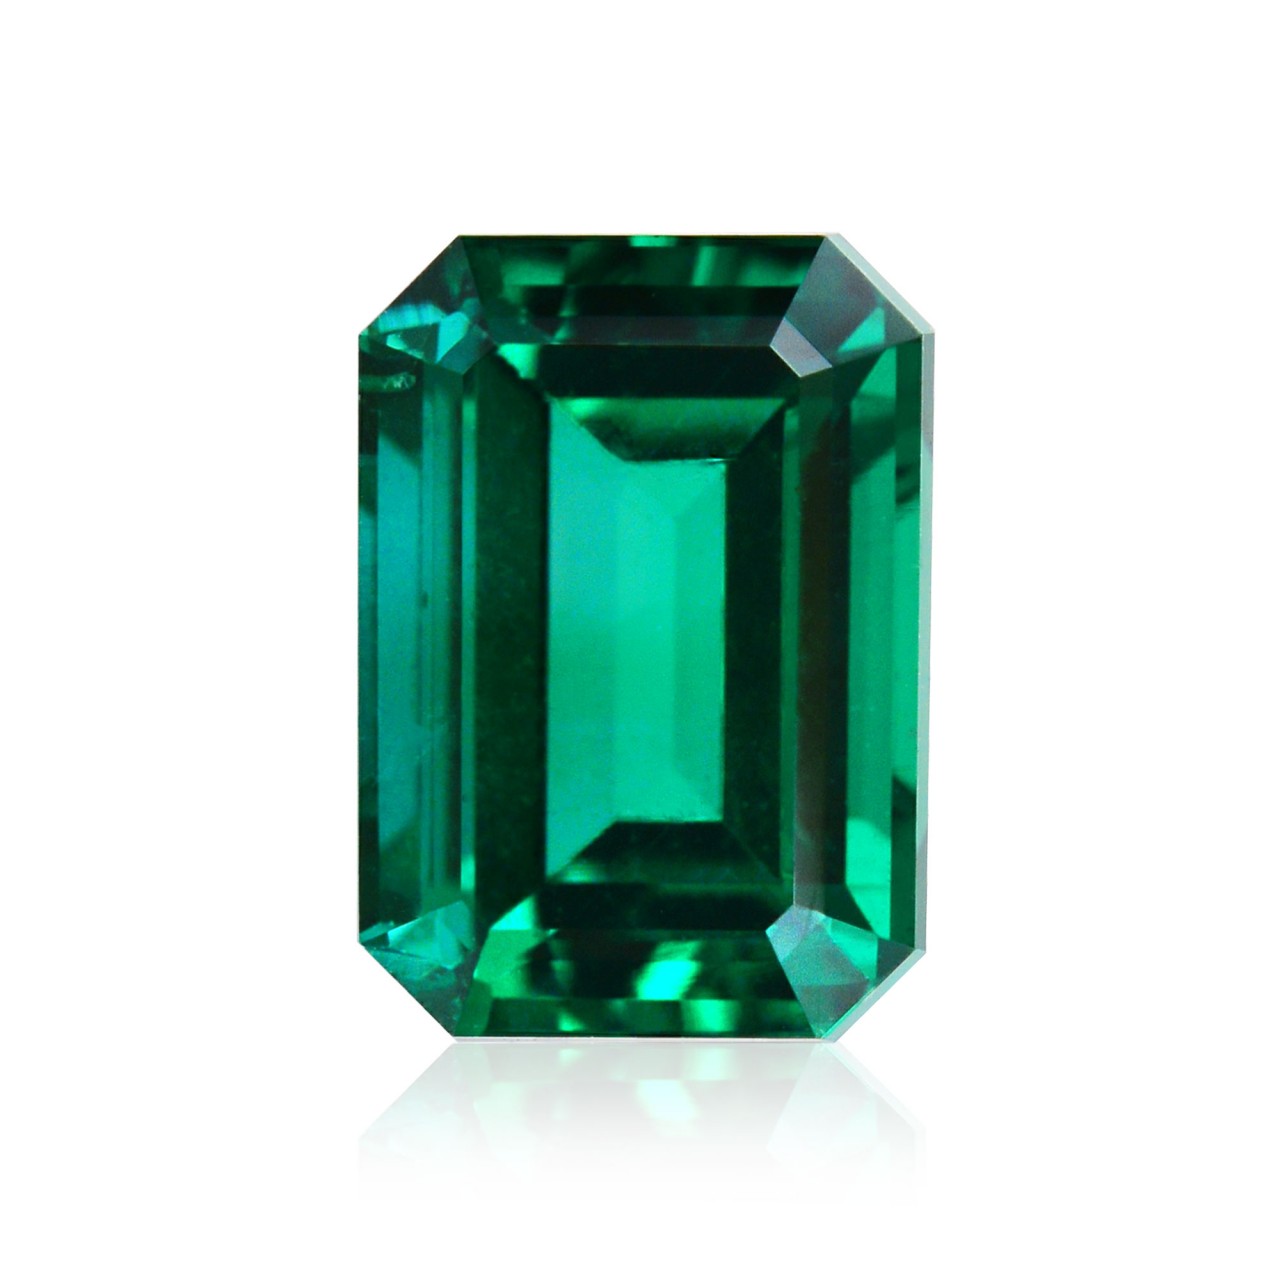 【エメラルド/Emerald】それは絶世の美女【クレオパトラが愛した石】